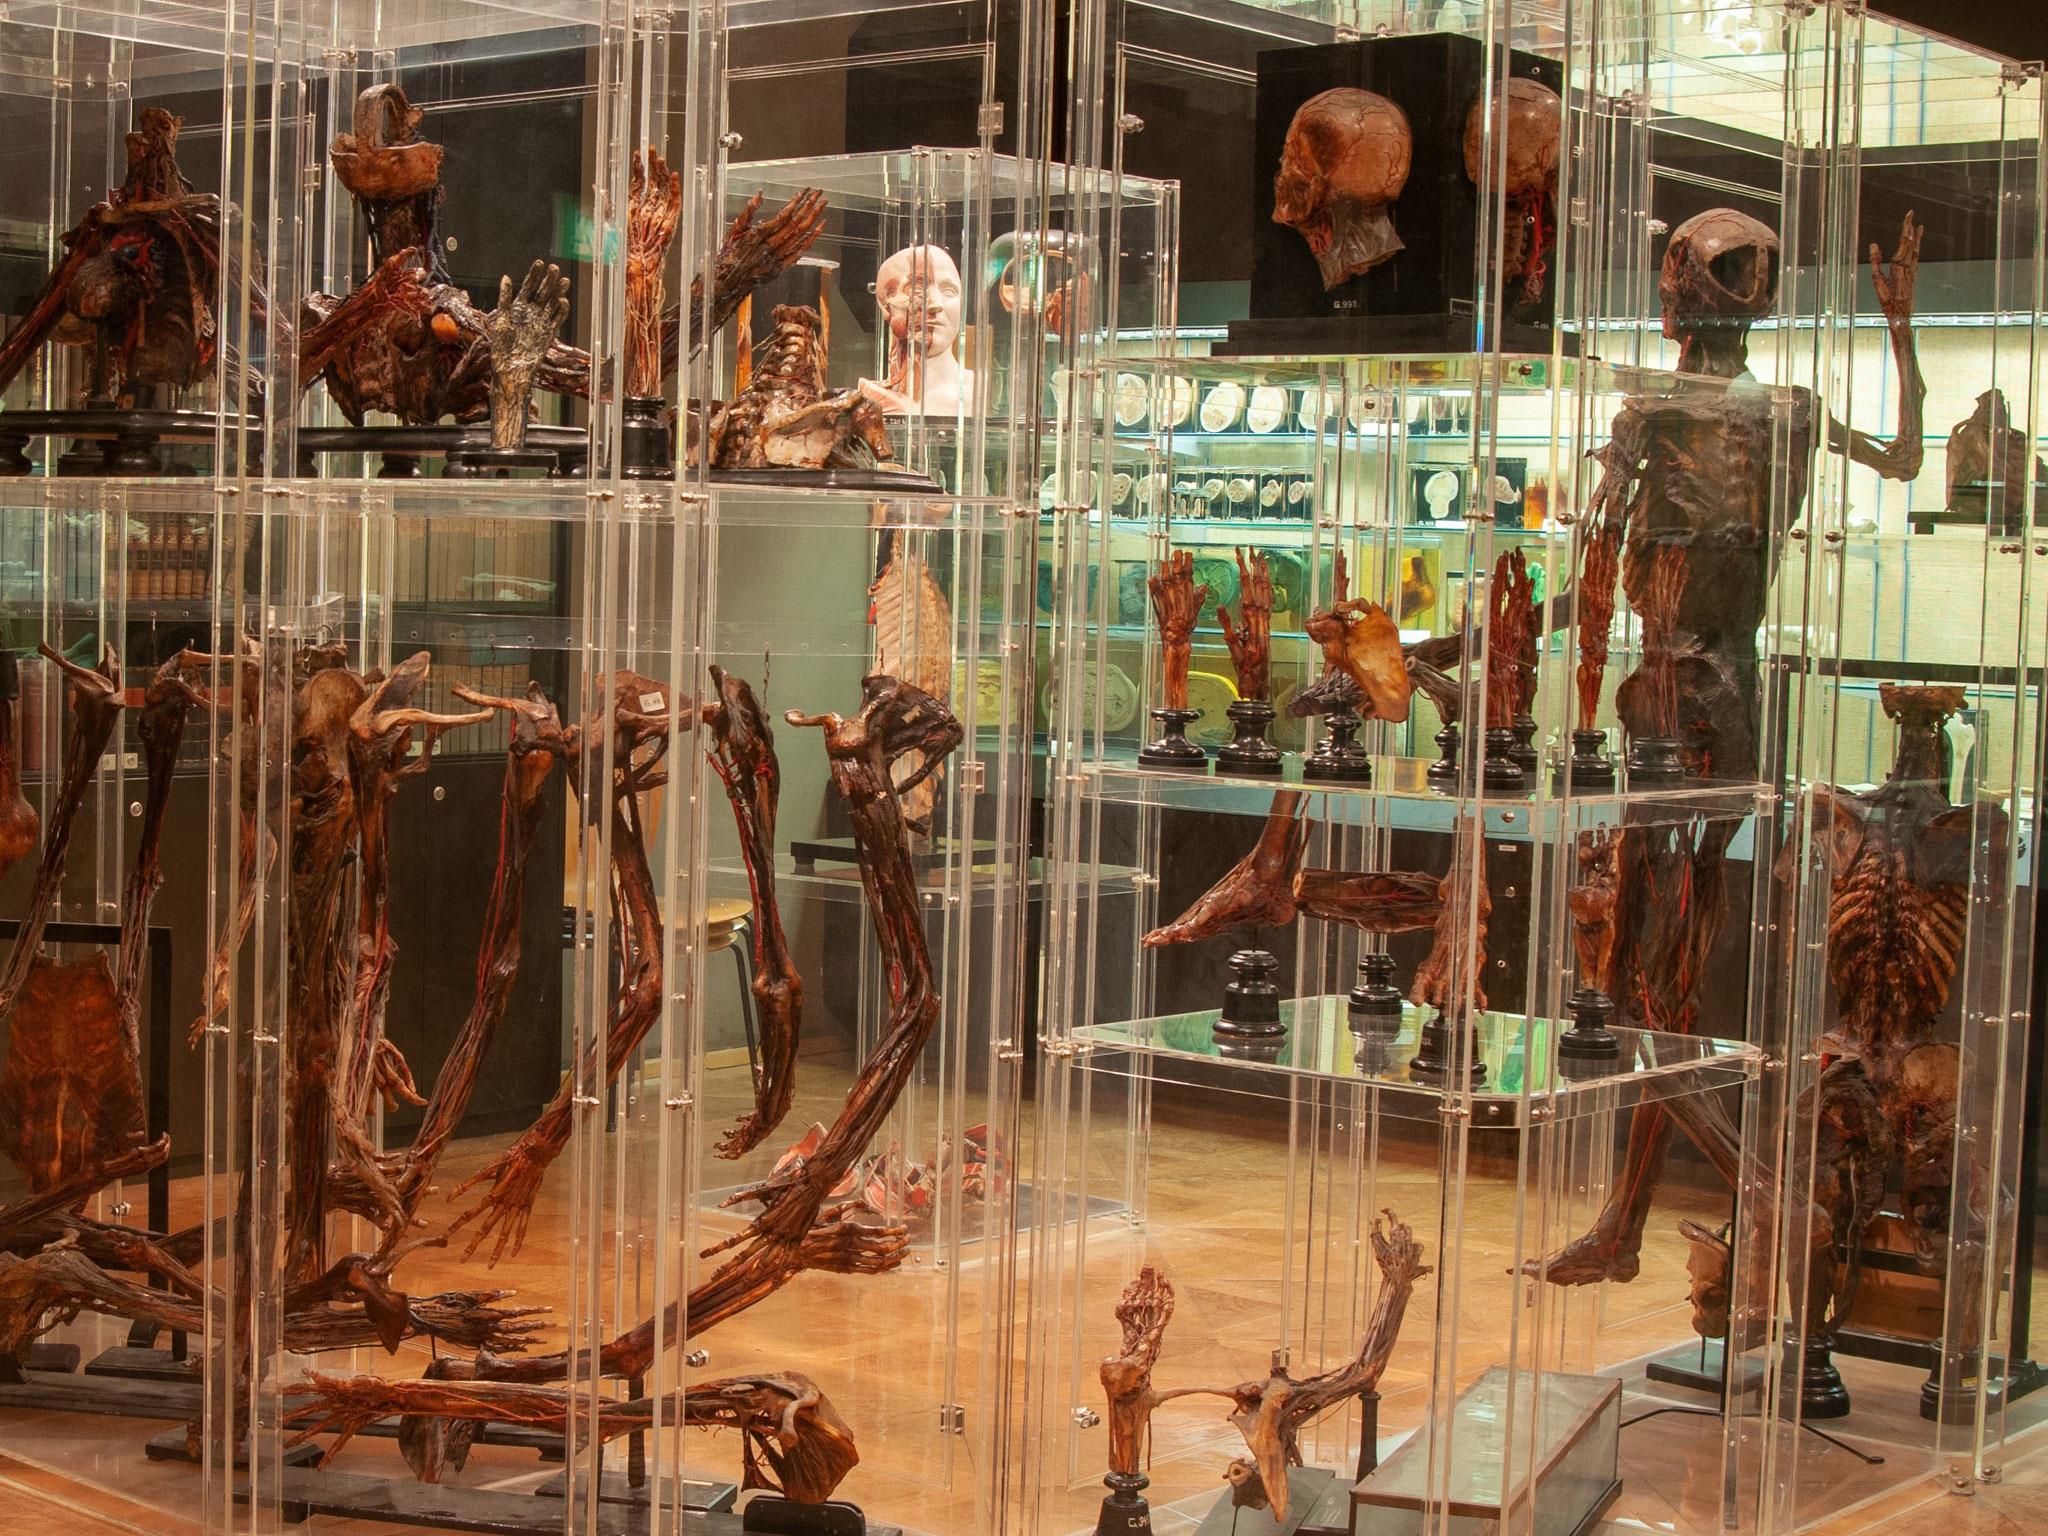 Anatomisches Museum Innsbruck